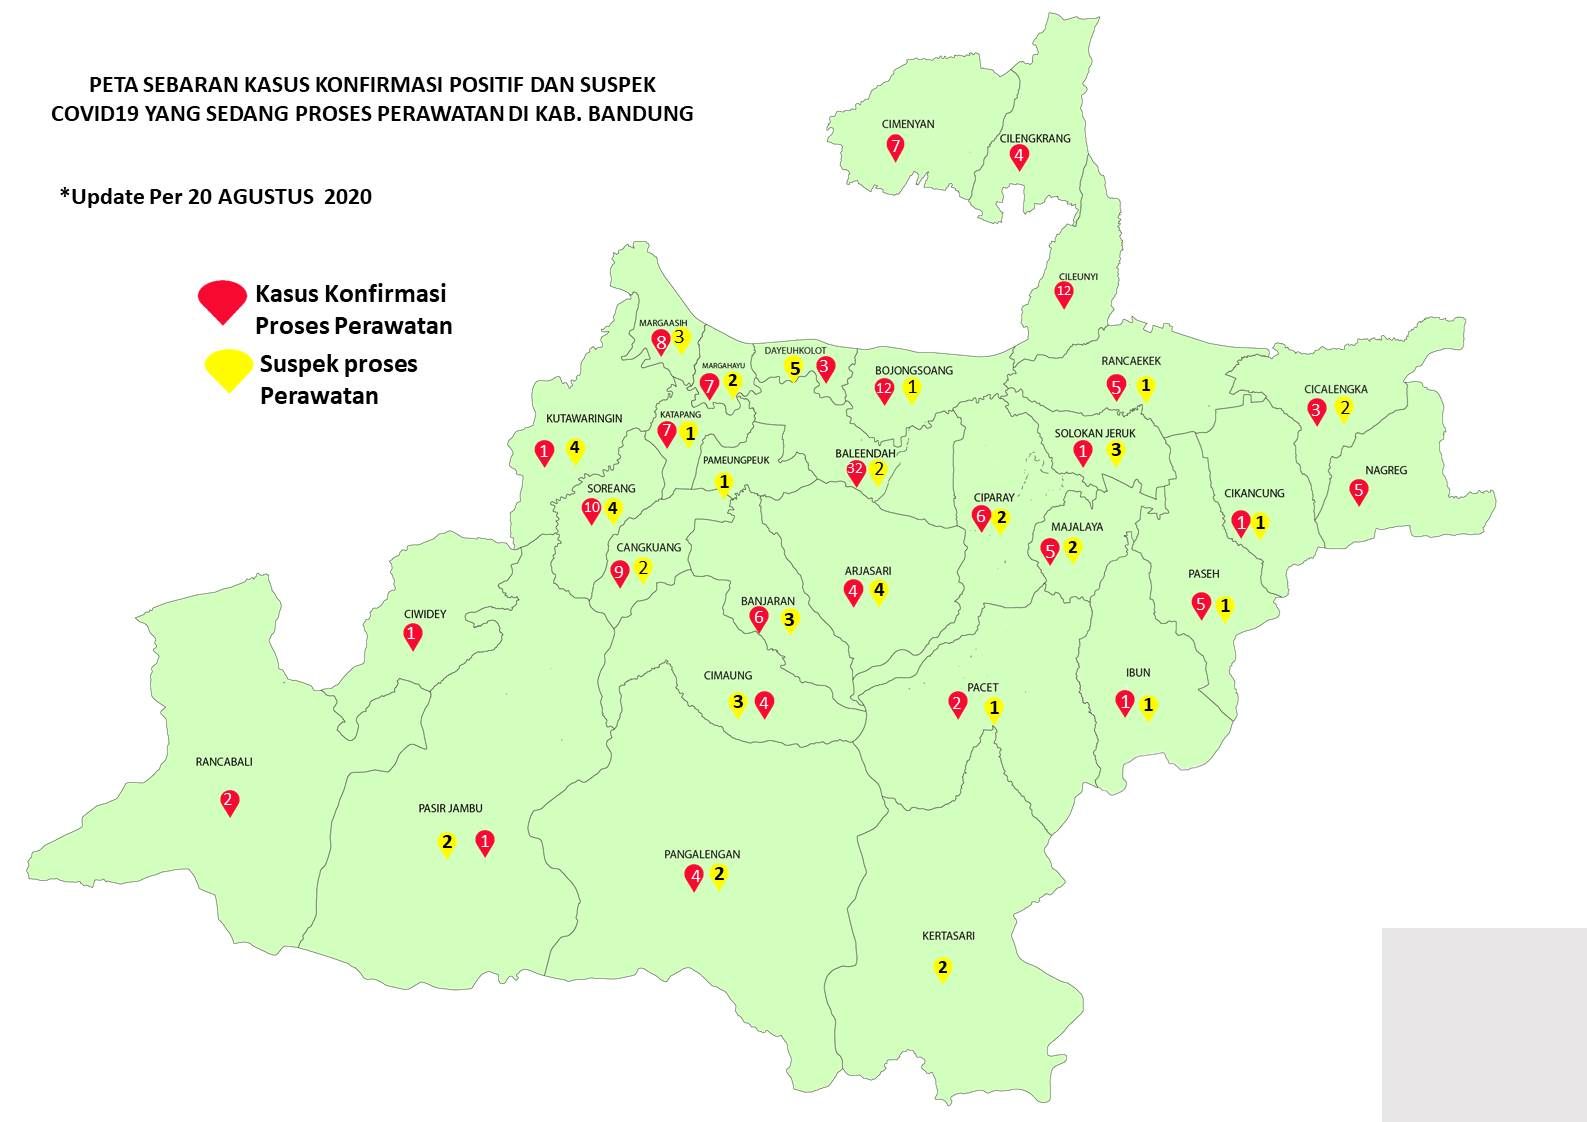 Peta sebaran kasus Covid-19 di Kabupaten Bandung per Kamis 20 Agustus 2020.*